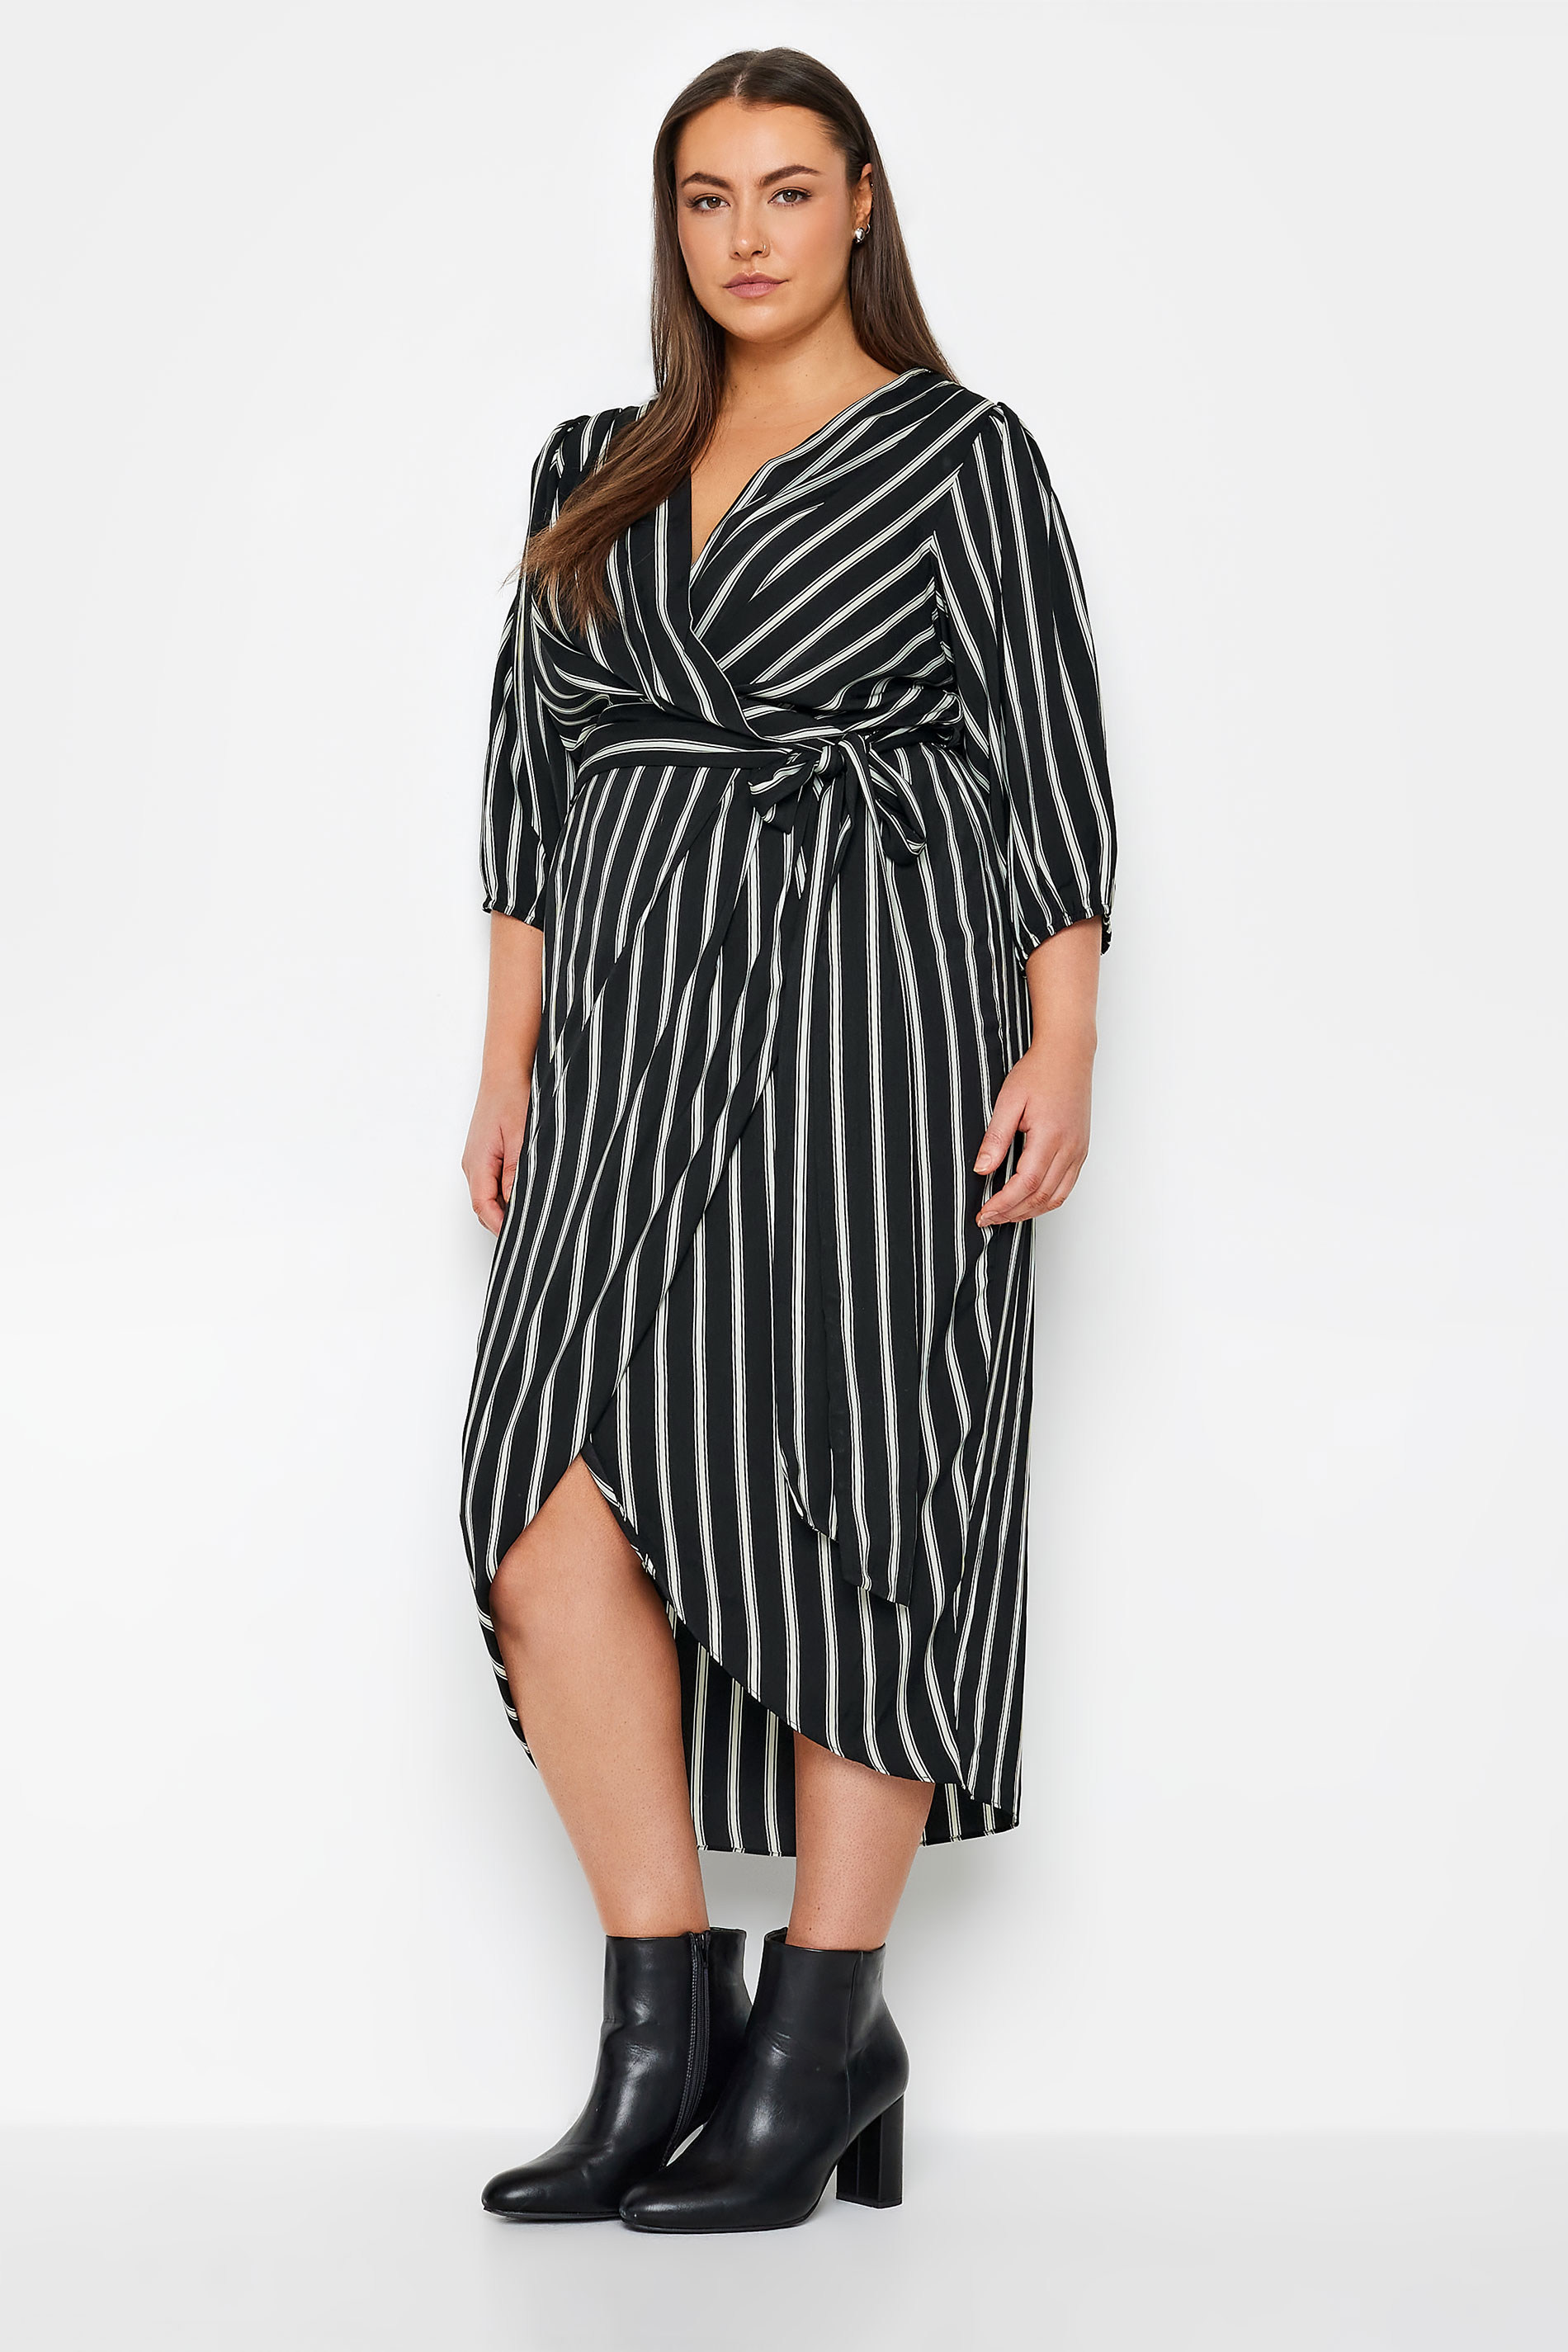 Evans Black & White Stripe Wrap Dress 1